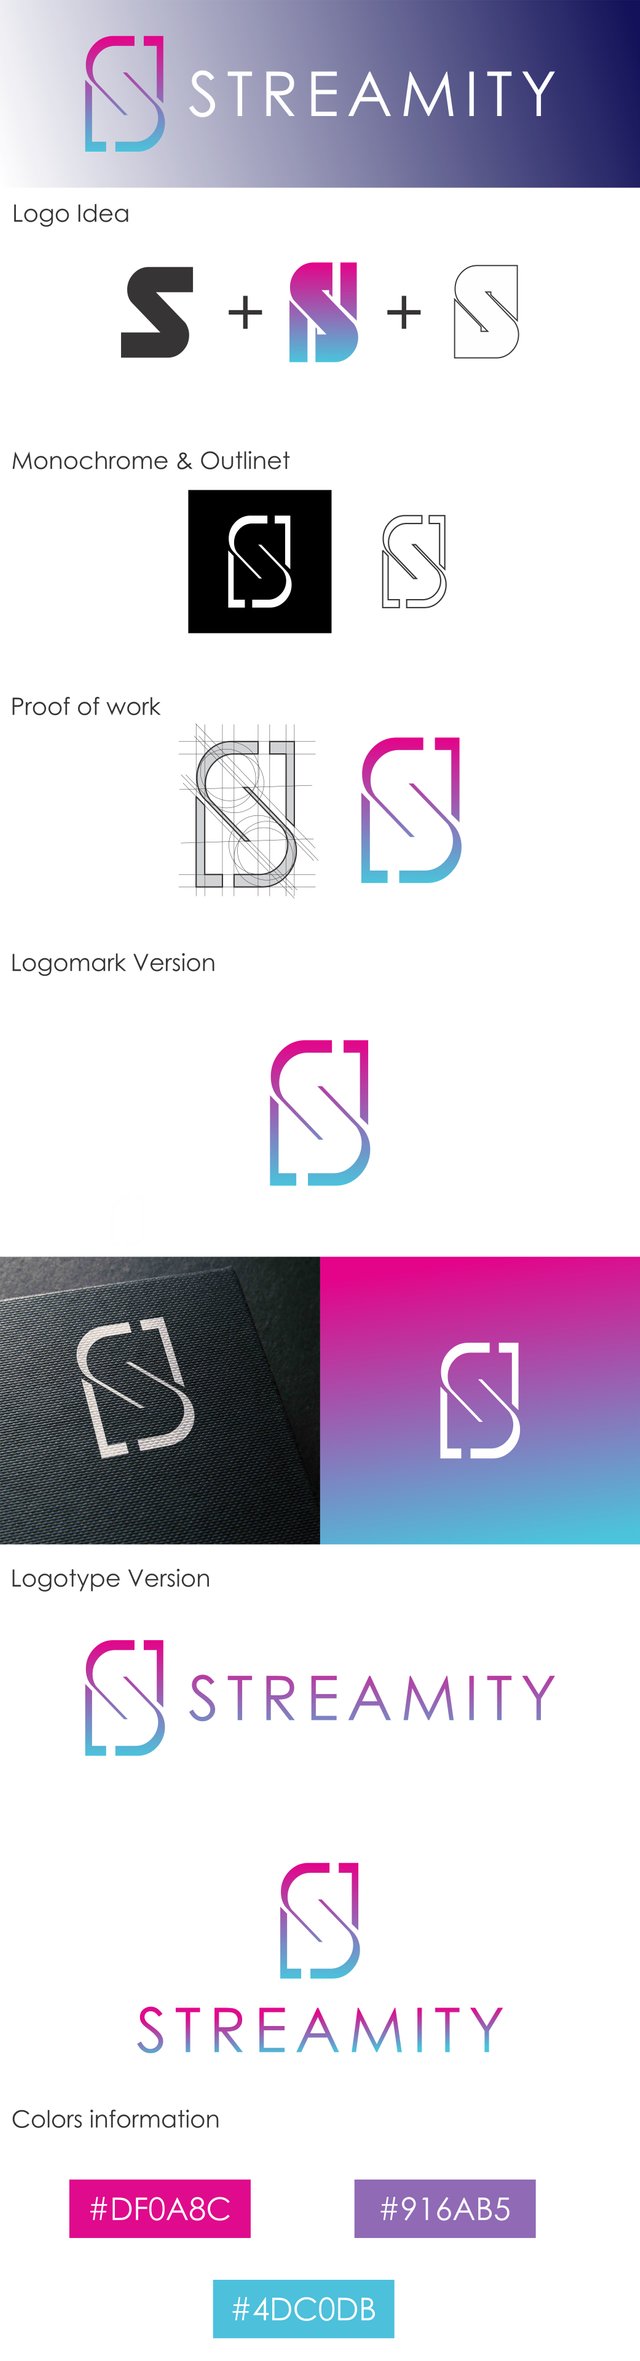 logo streamity full.jpg